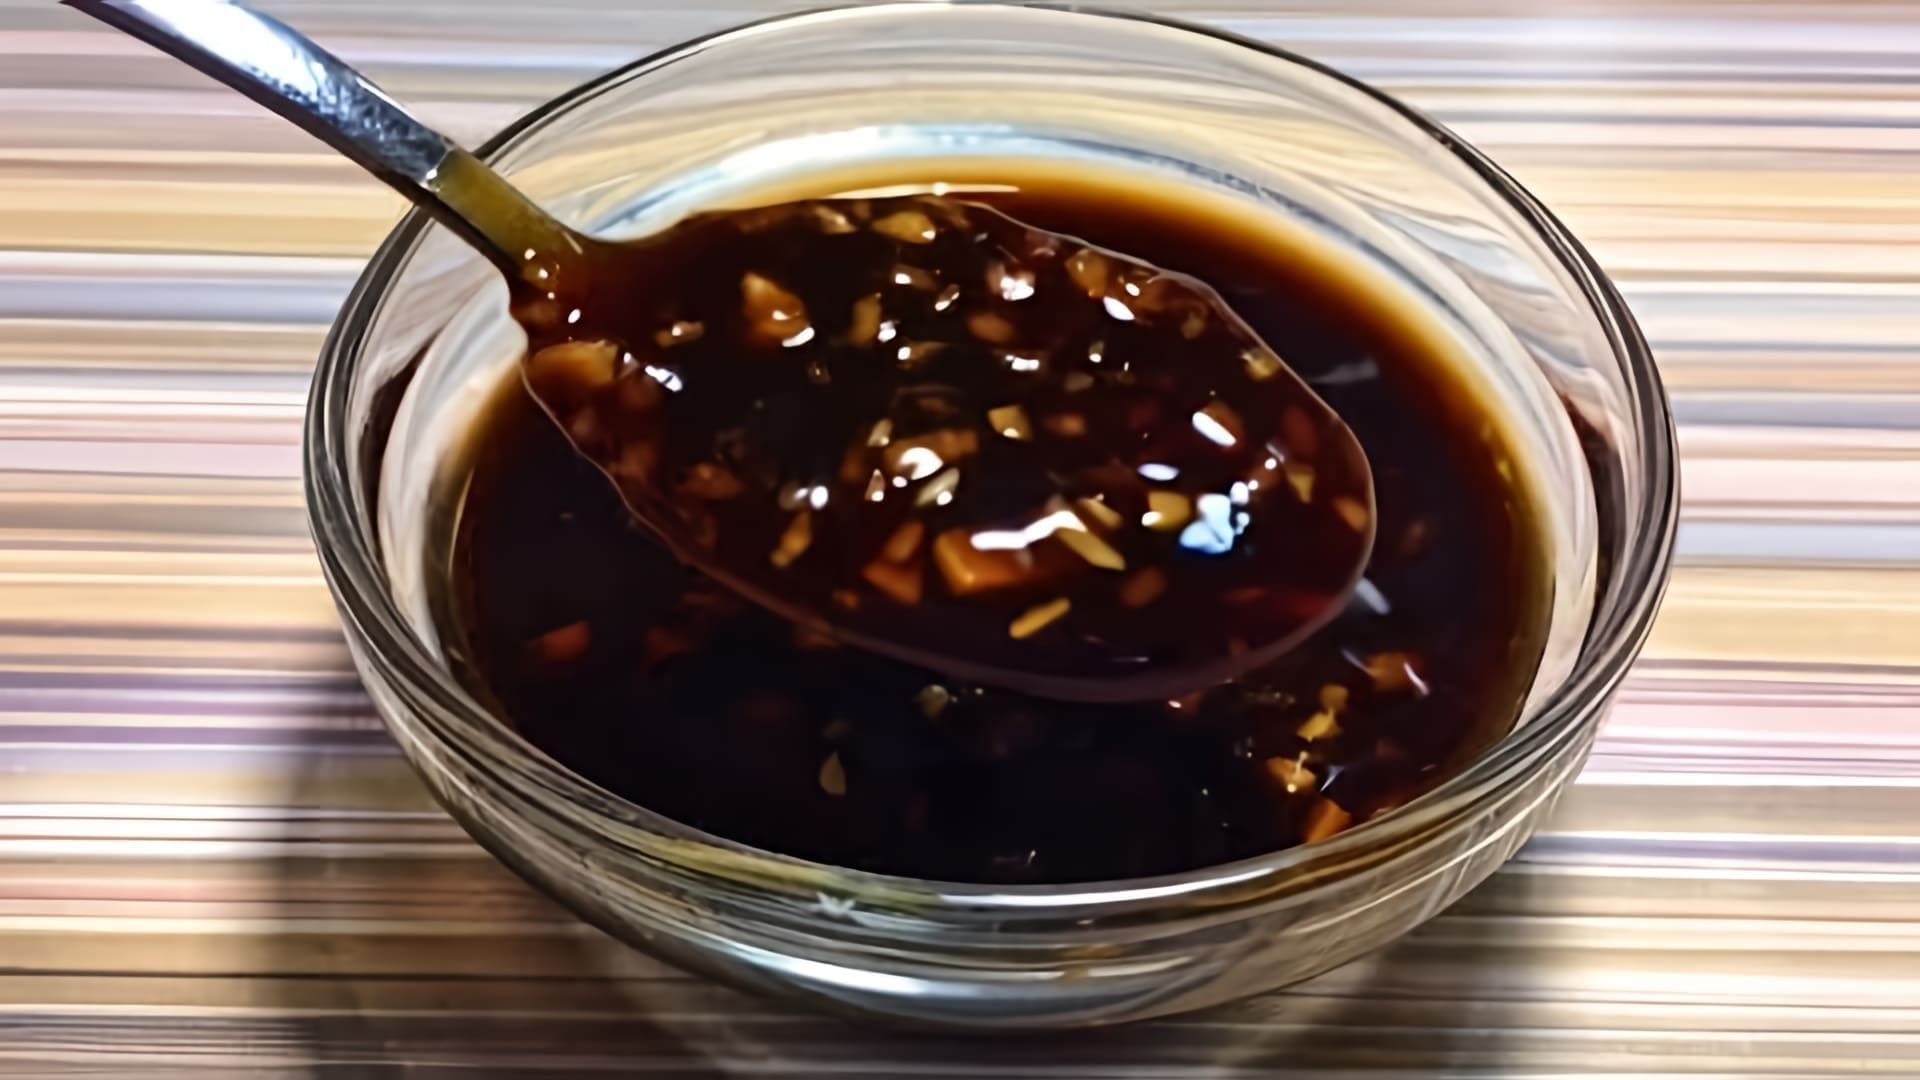 В этом видео-ролике будет показан рецепт приготовления острого китайского соуса, который является очень вкусным и популярным